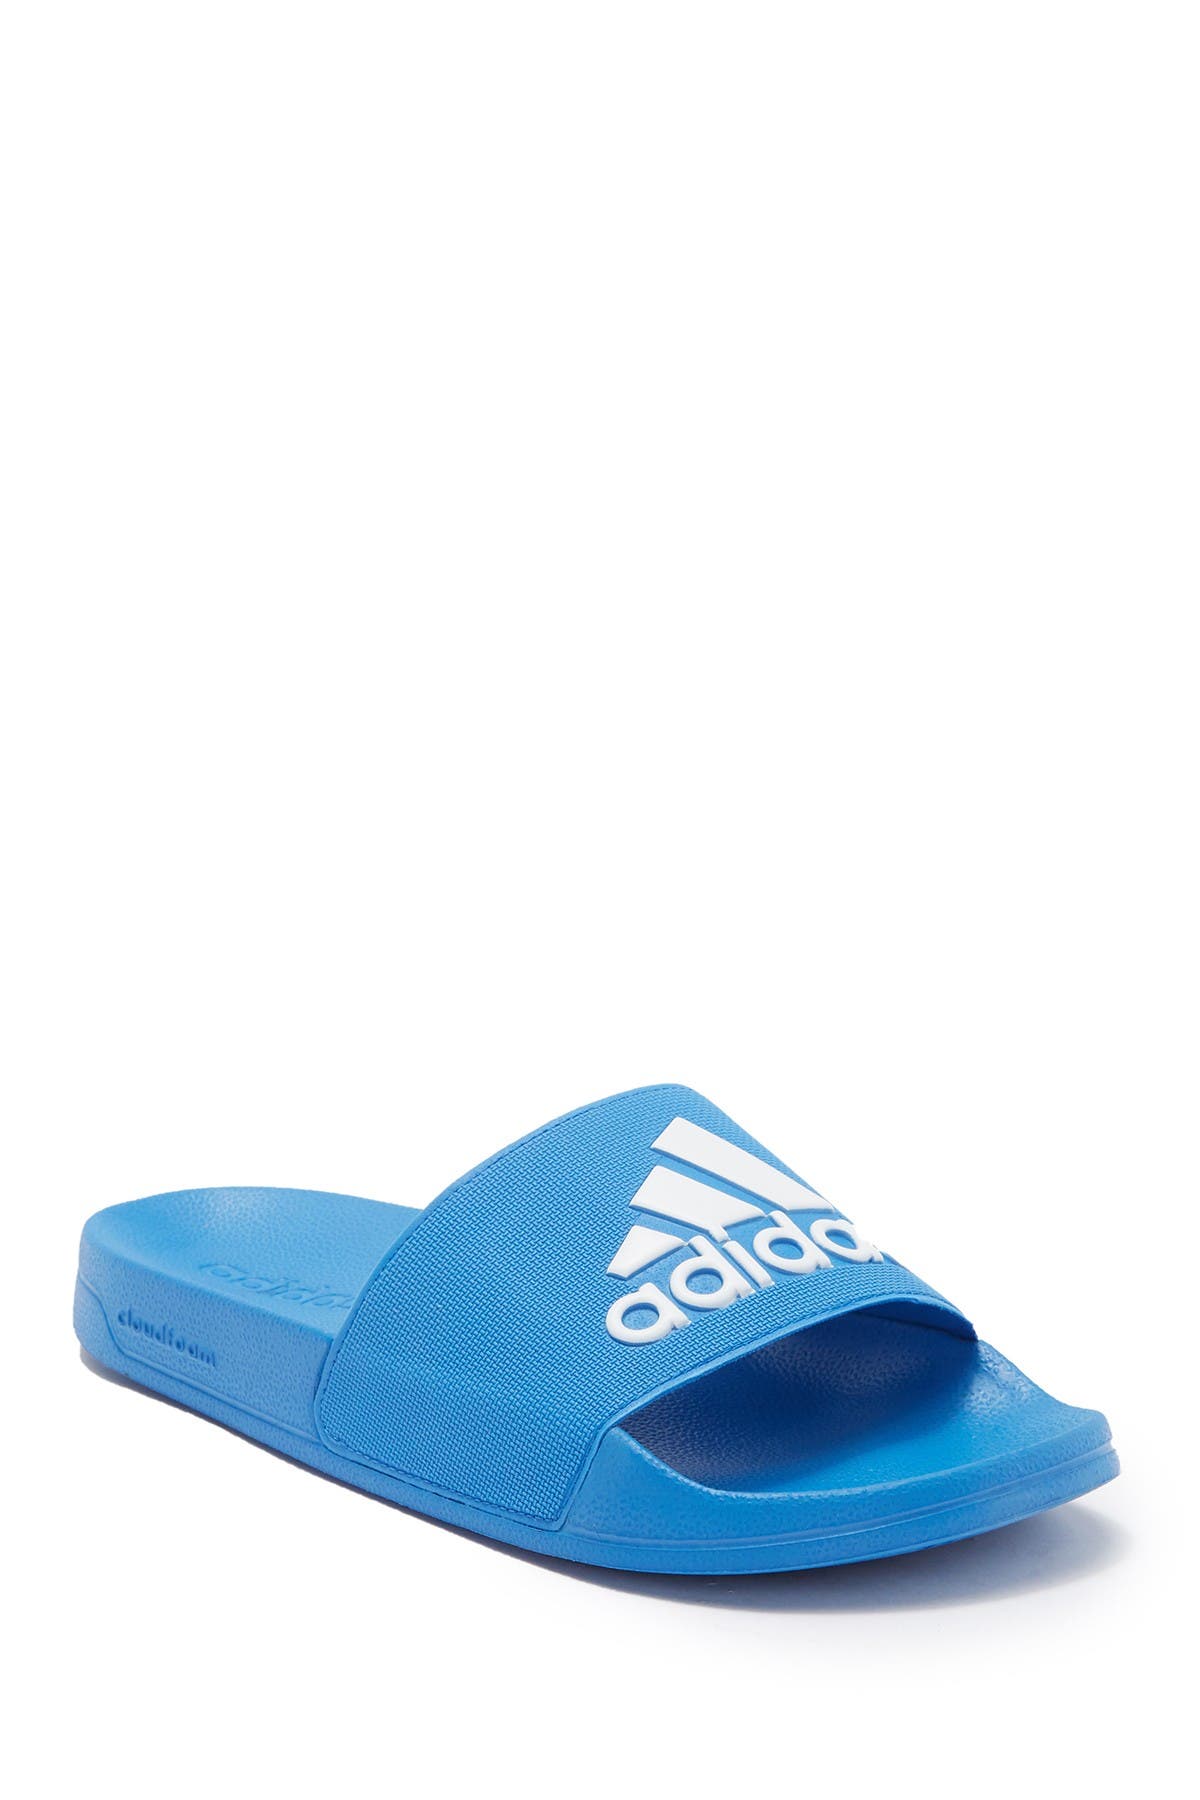 adidas adilette shower slide sandal